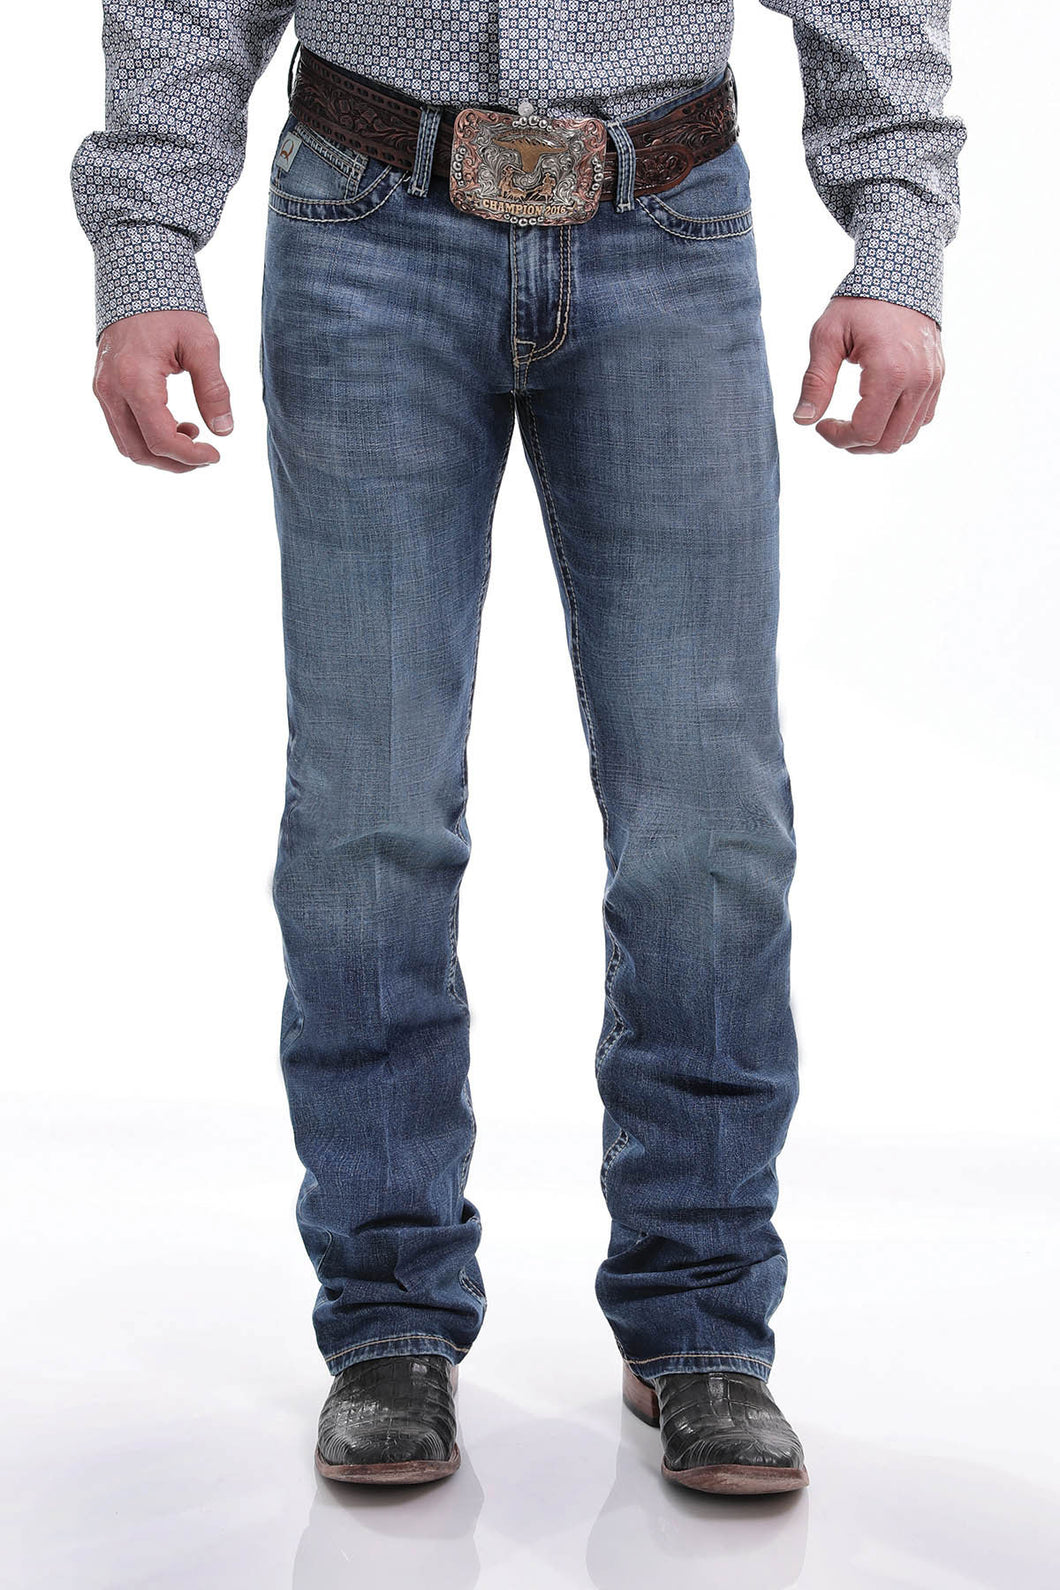 Cinch Men's Slim Fit Ian Jeans